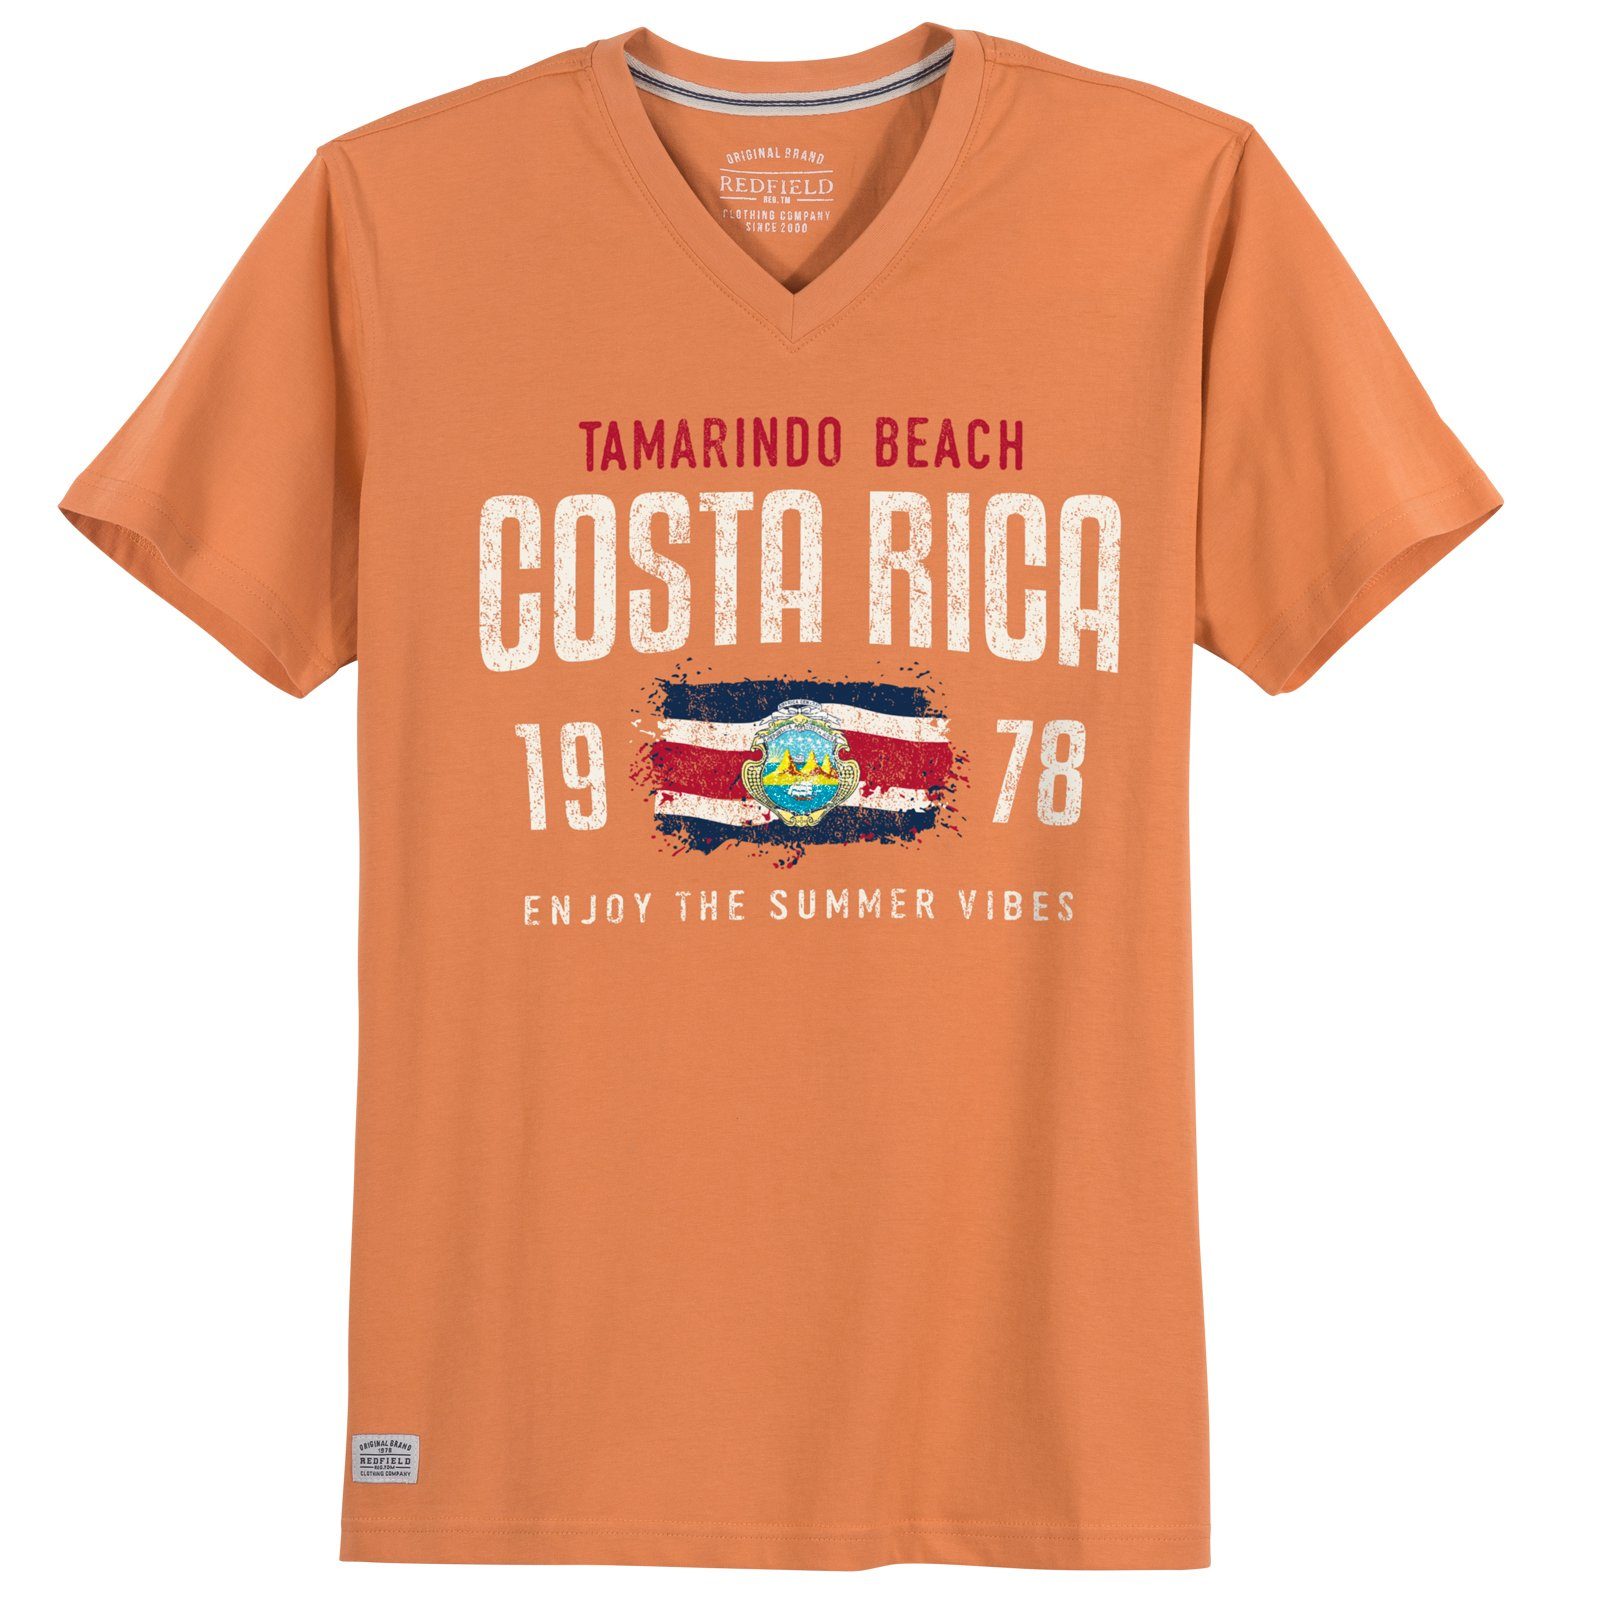 redfield Print-Shirt Große Größen Herren T-Shirt V-Neck Costa Rica orange Redfield